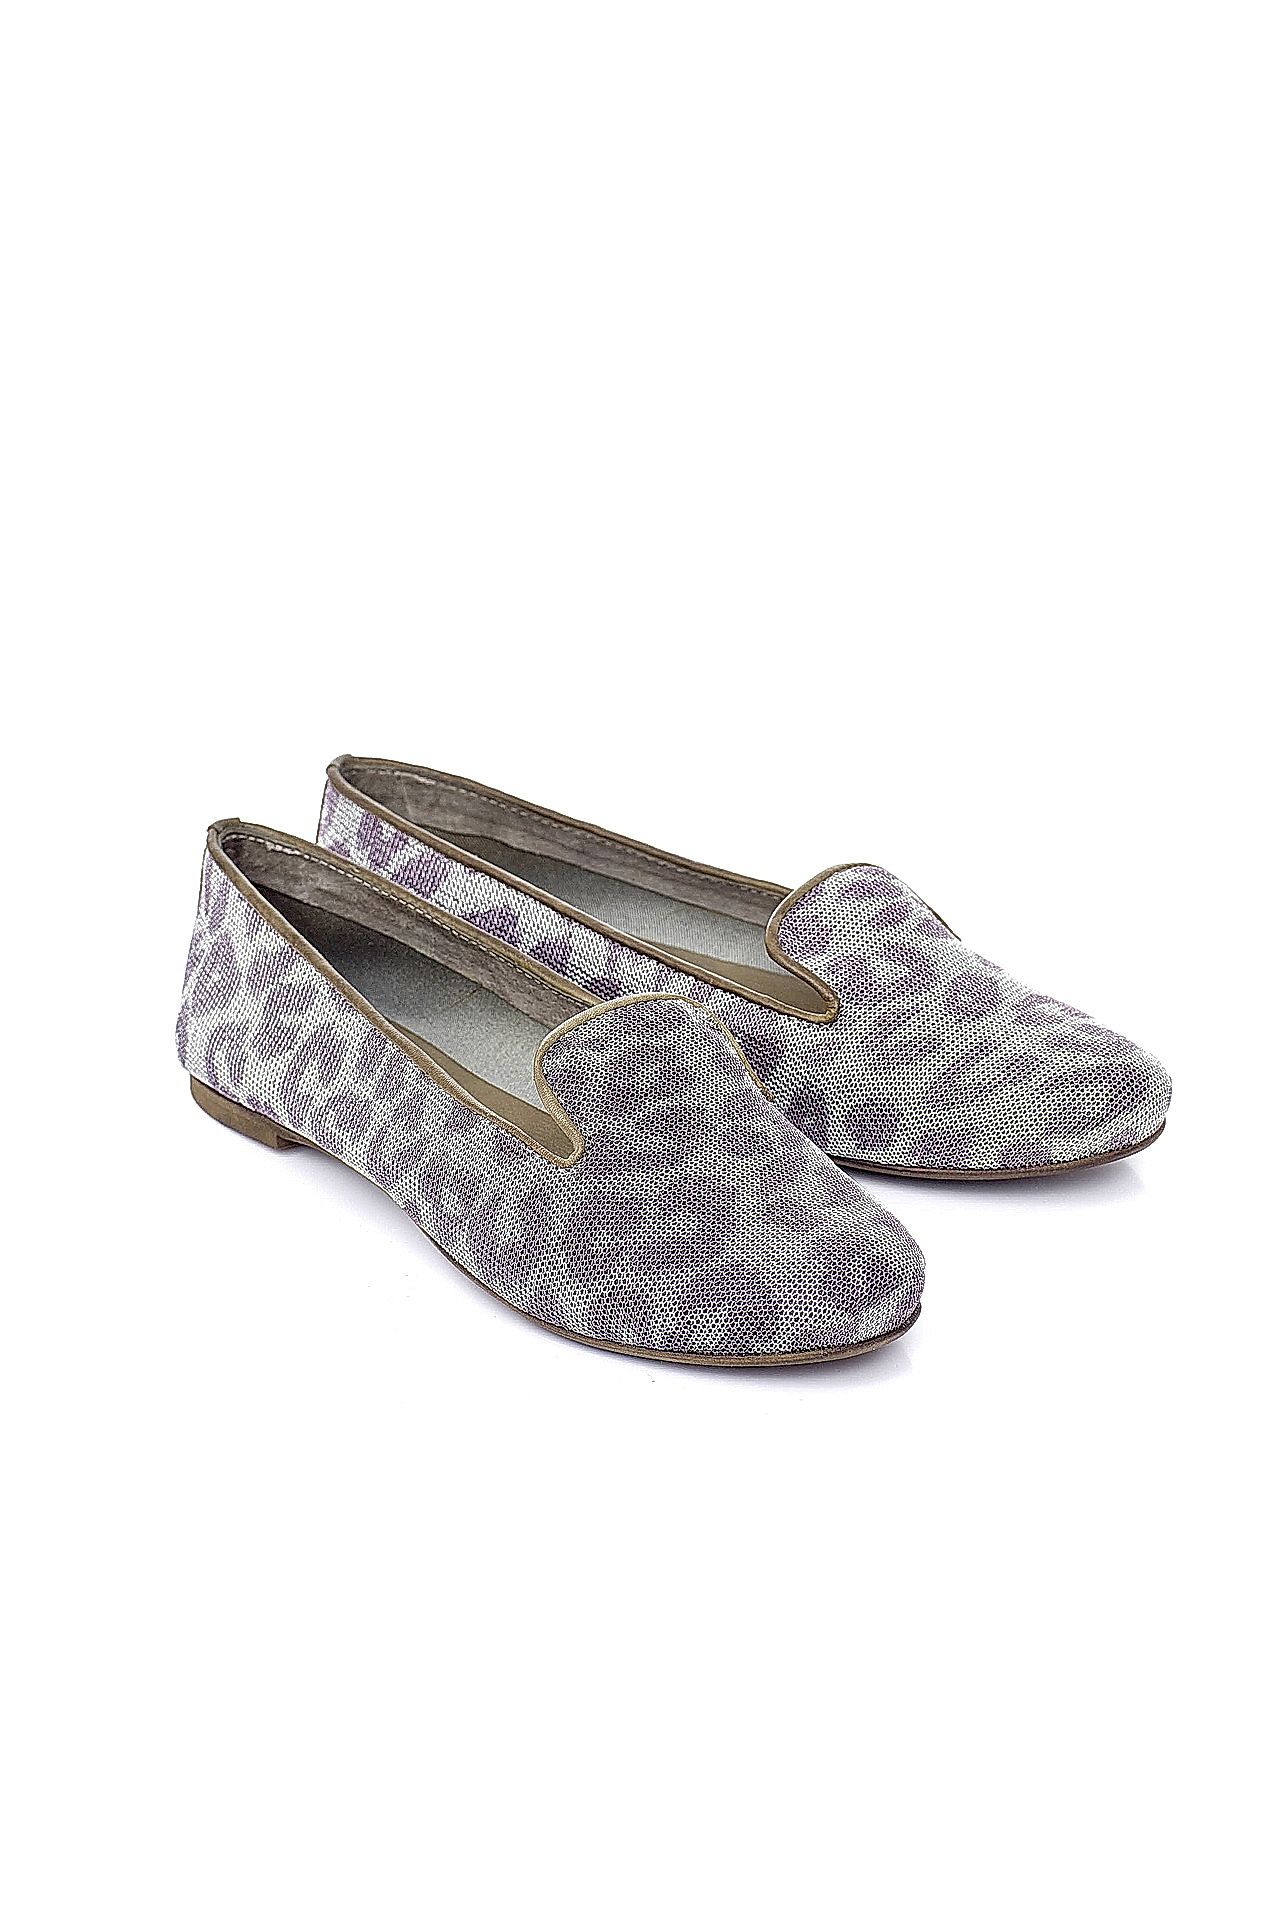 Обувь женская Слиперы CALZOLERIA ITALIANA (PANTOFOLA-N/14.2). Купить за 6450 руб.